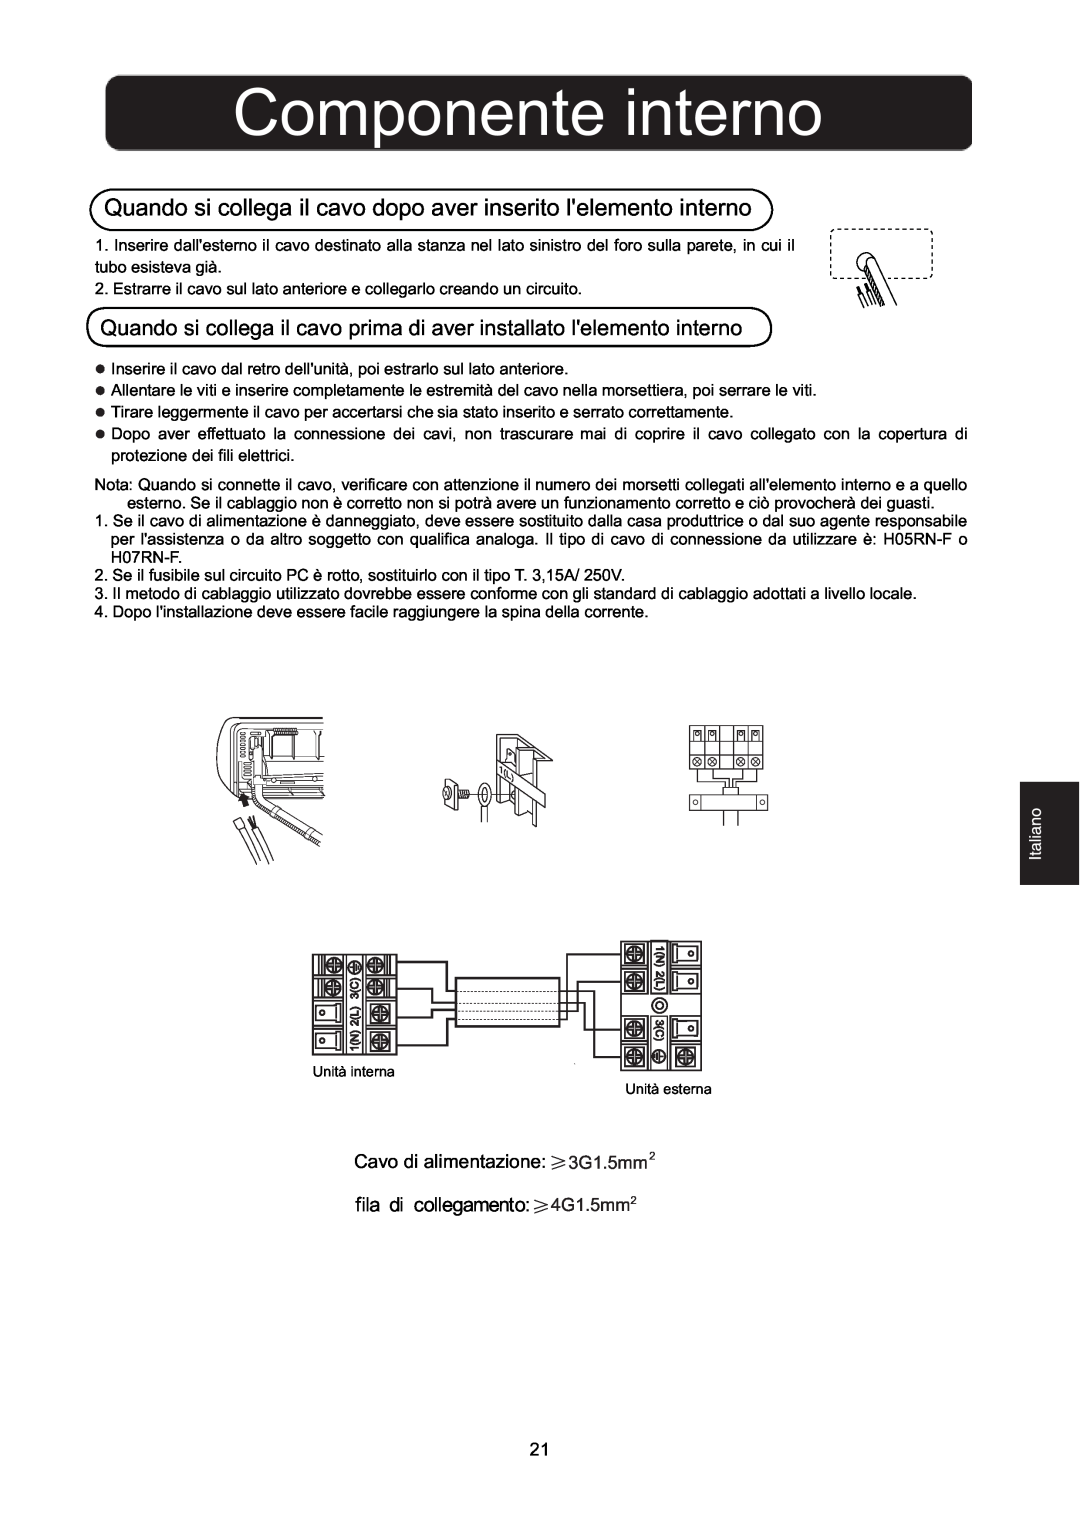 Hitachi HSU-09RD03/R2(SDB) Componente interno, fila di collegamento 4G1.5mm2, Cavo di alimentazione 3G1.5mm2 